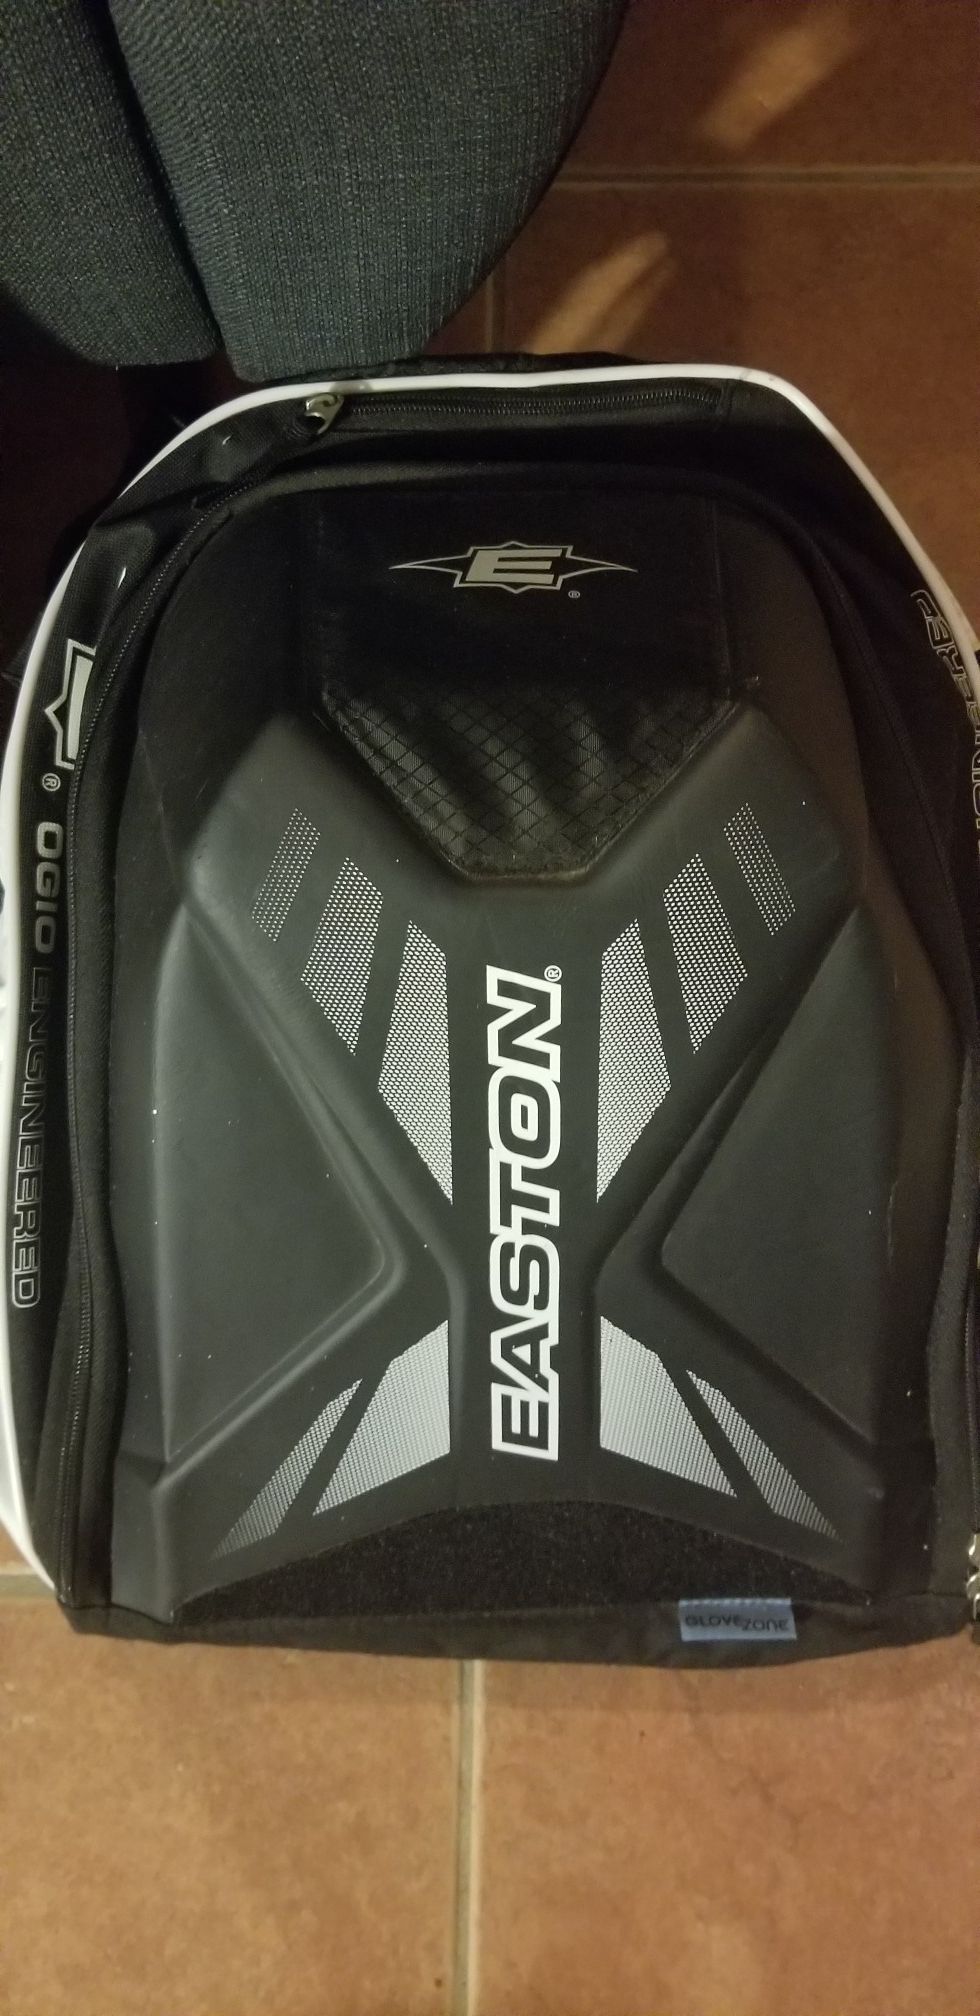 Easton Baseball bag backpack